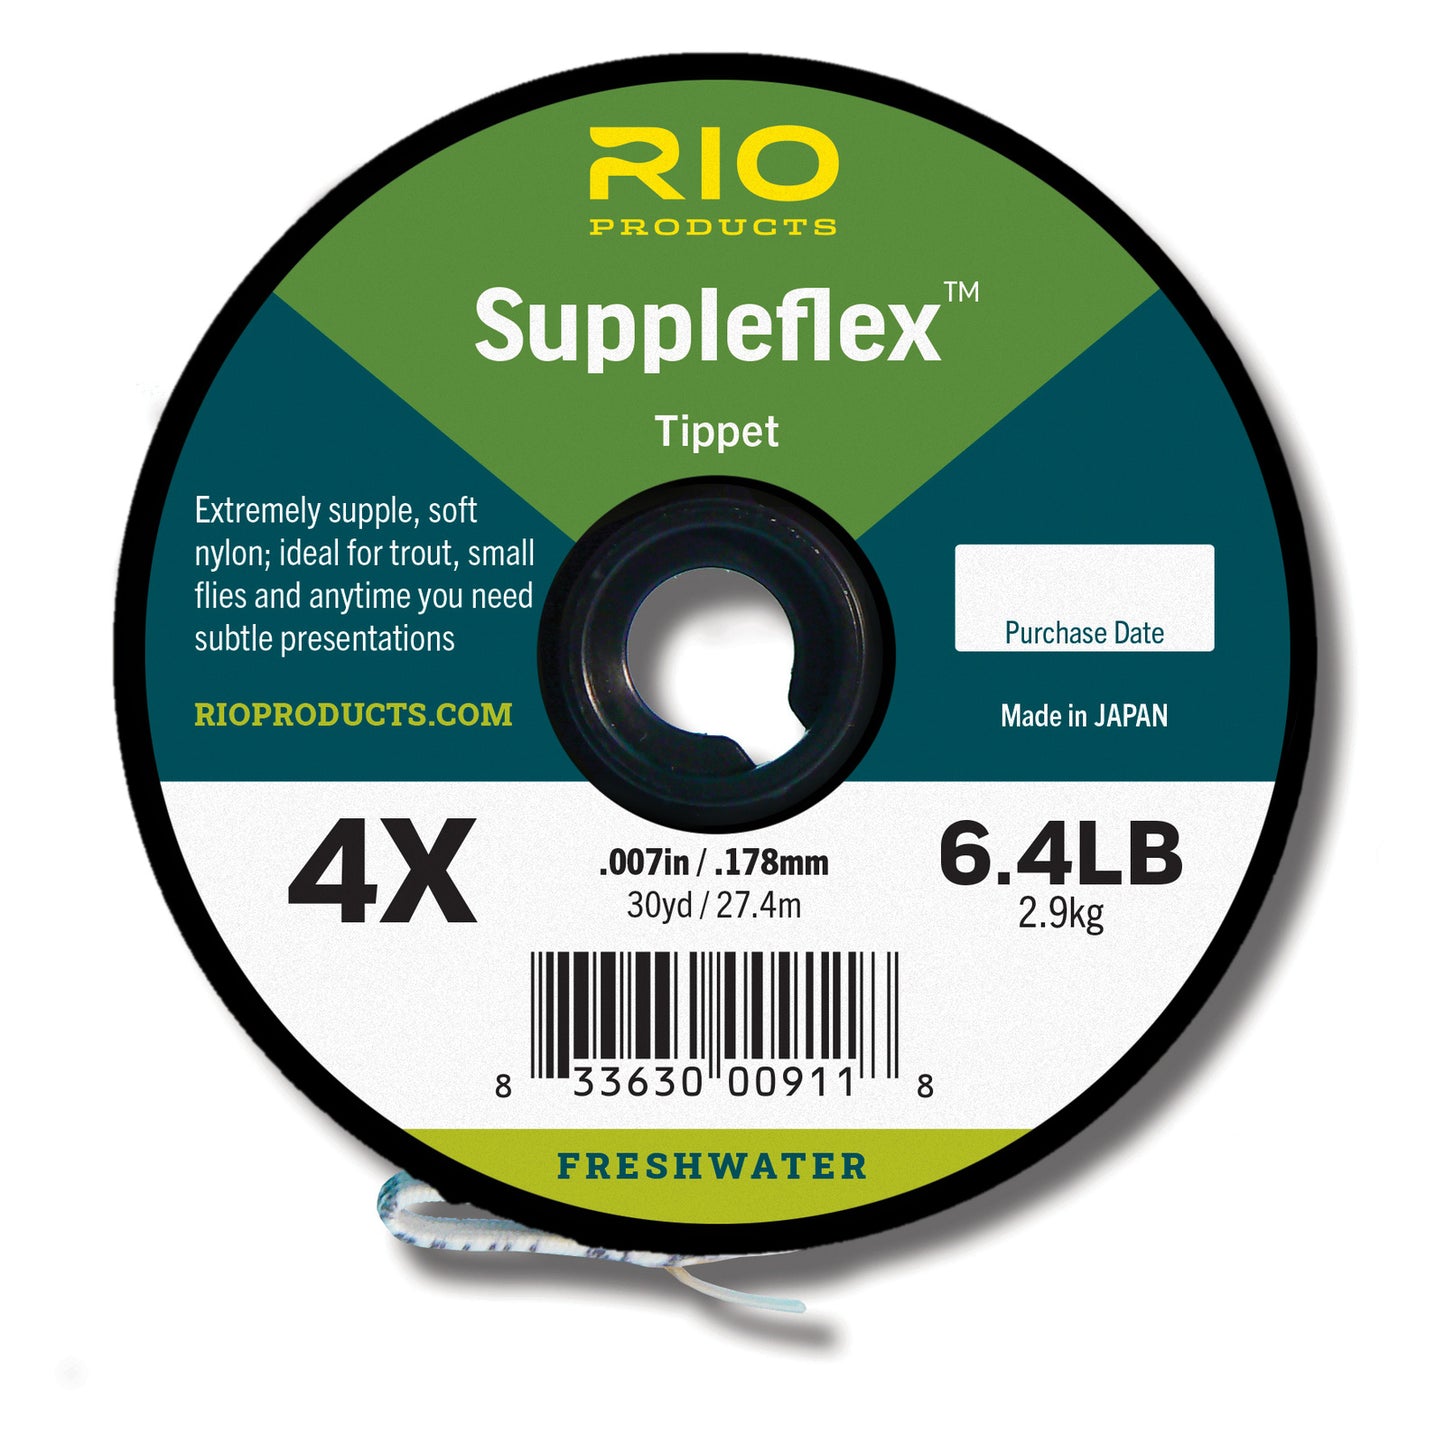 Rio Suppleflex Tippet